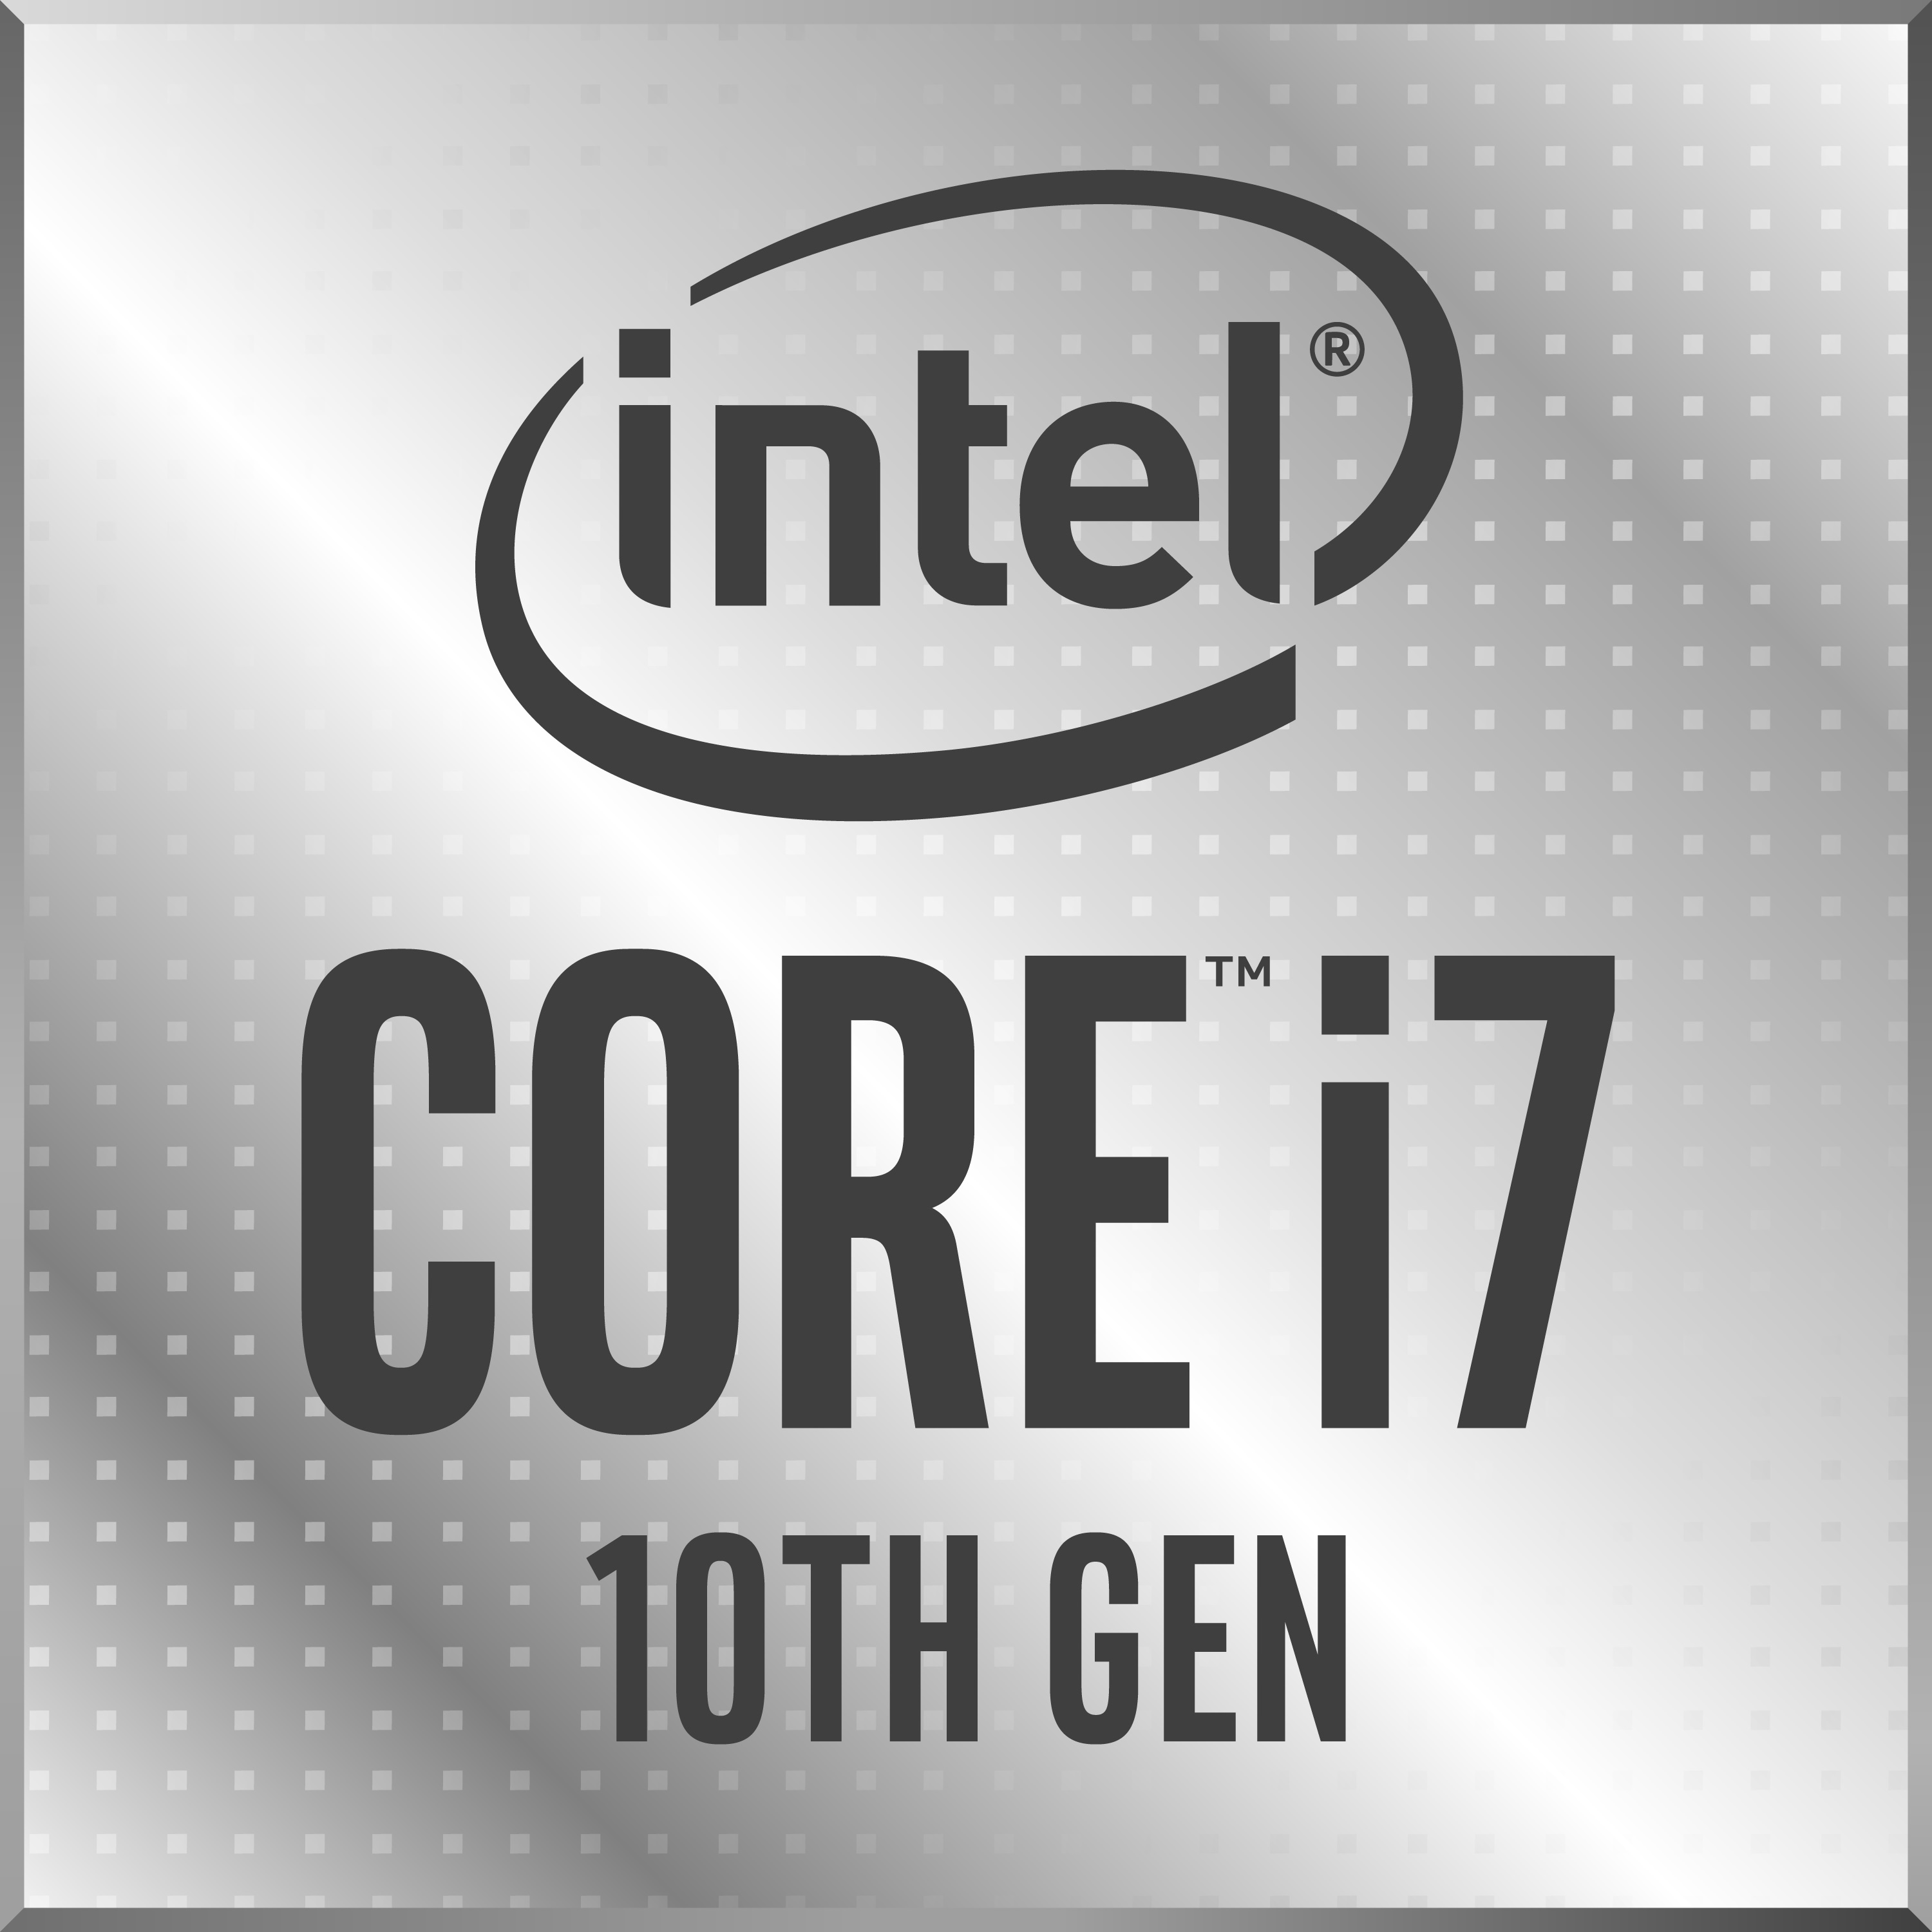 https://www.notebookcheck.info/fileadmin/Notebooks/Intel/Ice_Lake/Intel_10th_Gen_Core_i7_badge.jpg